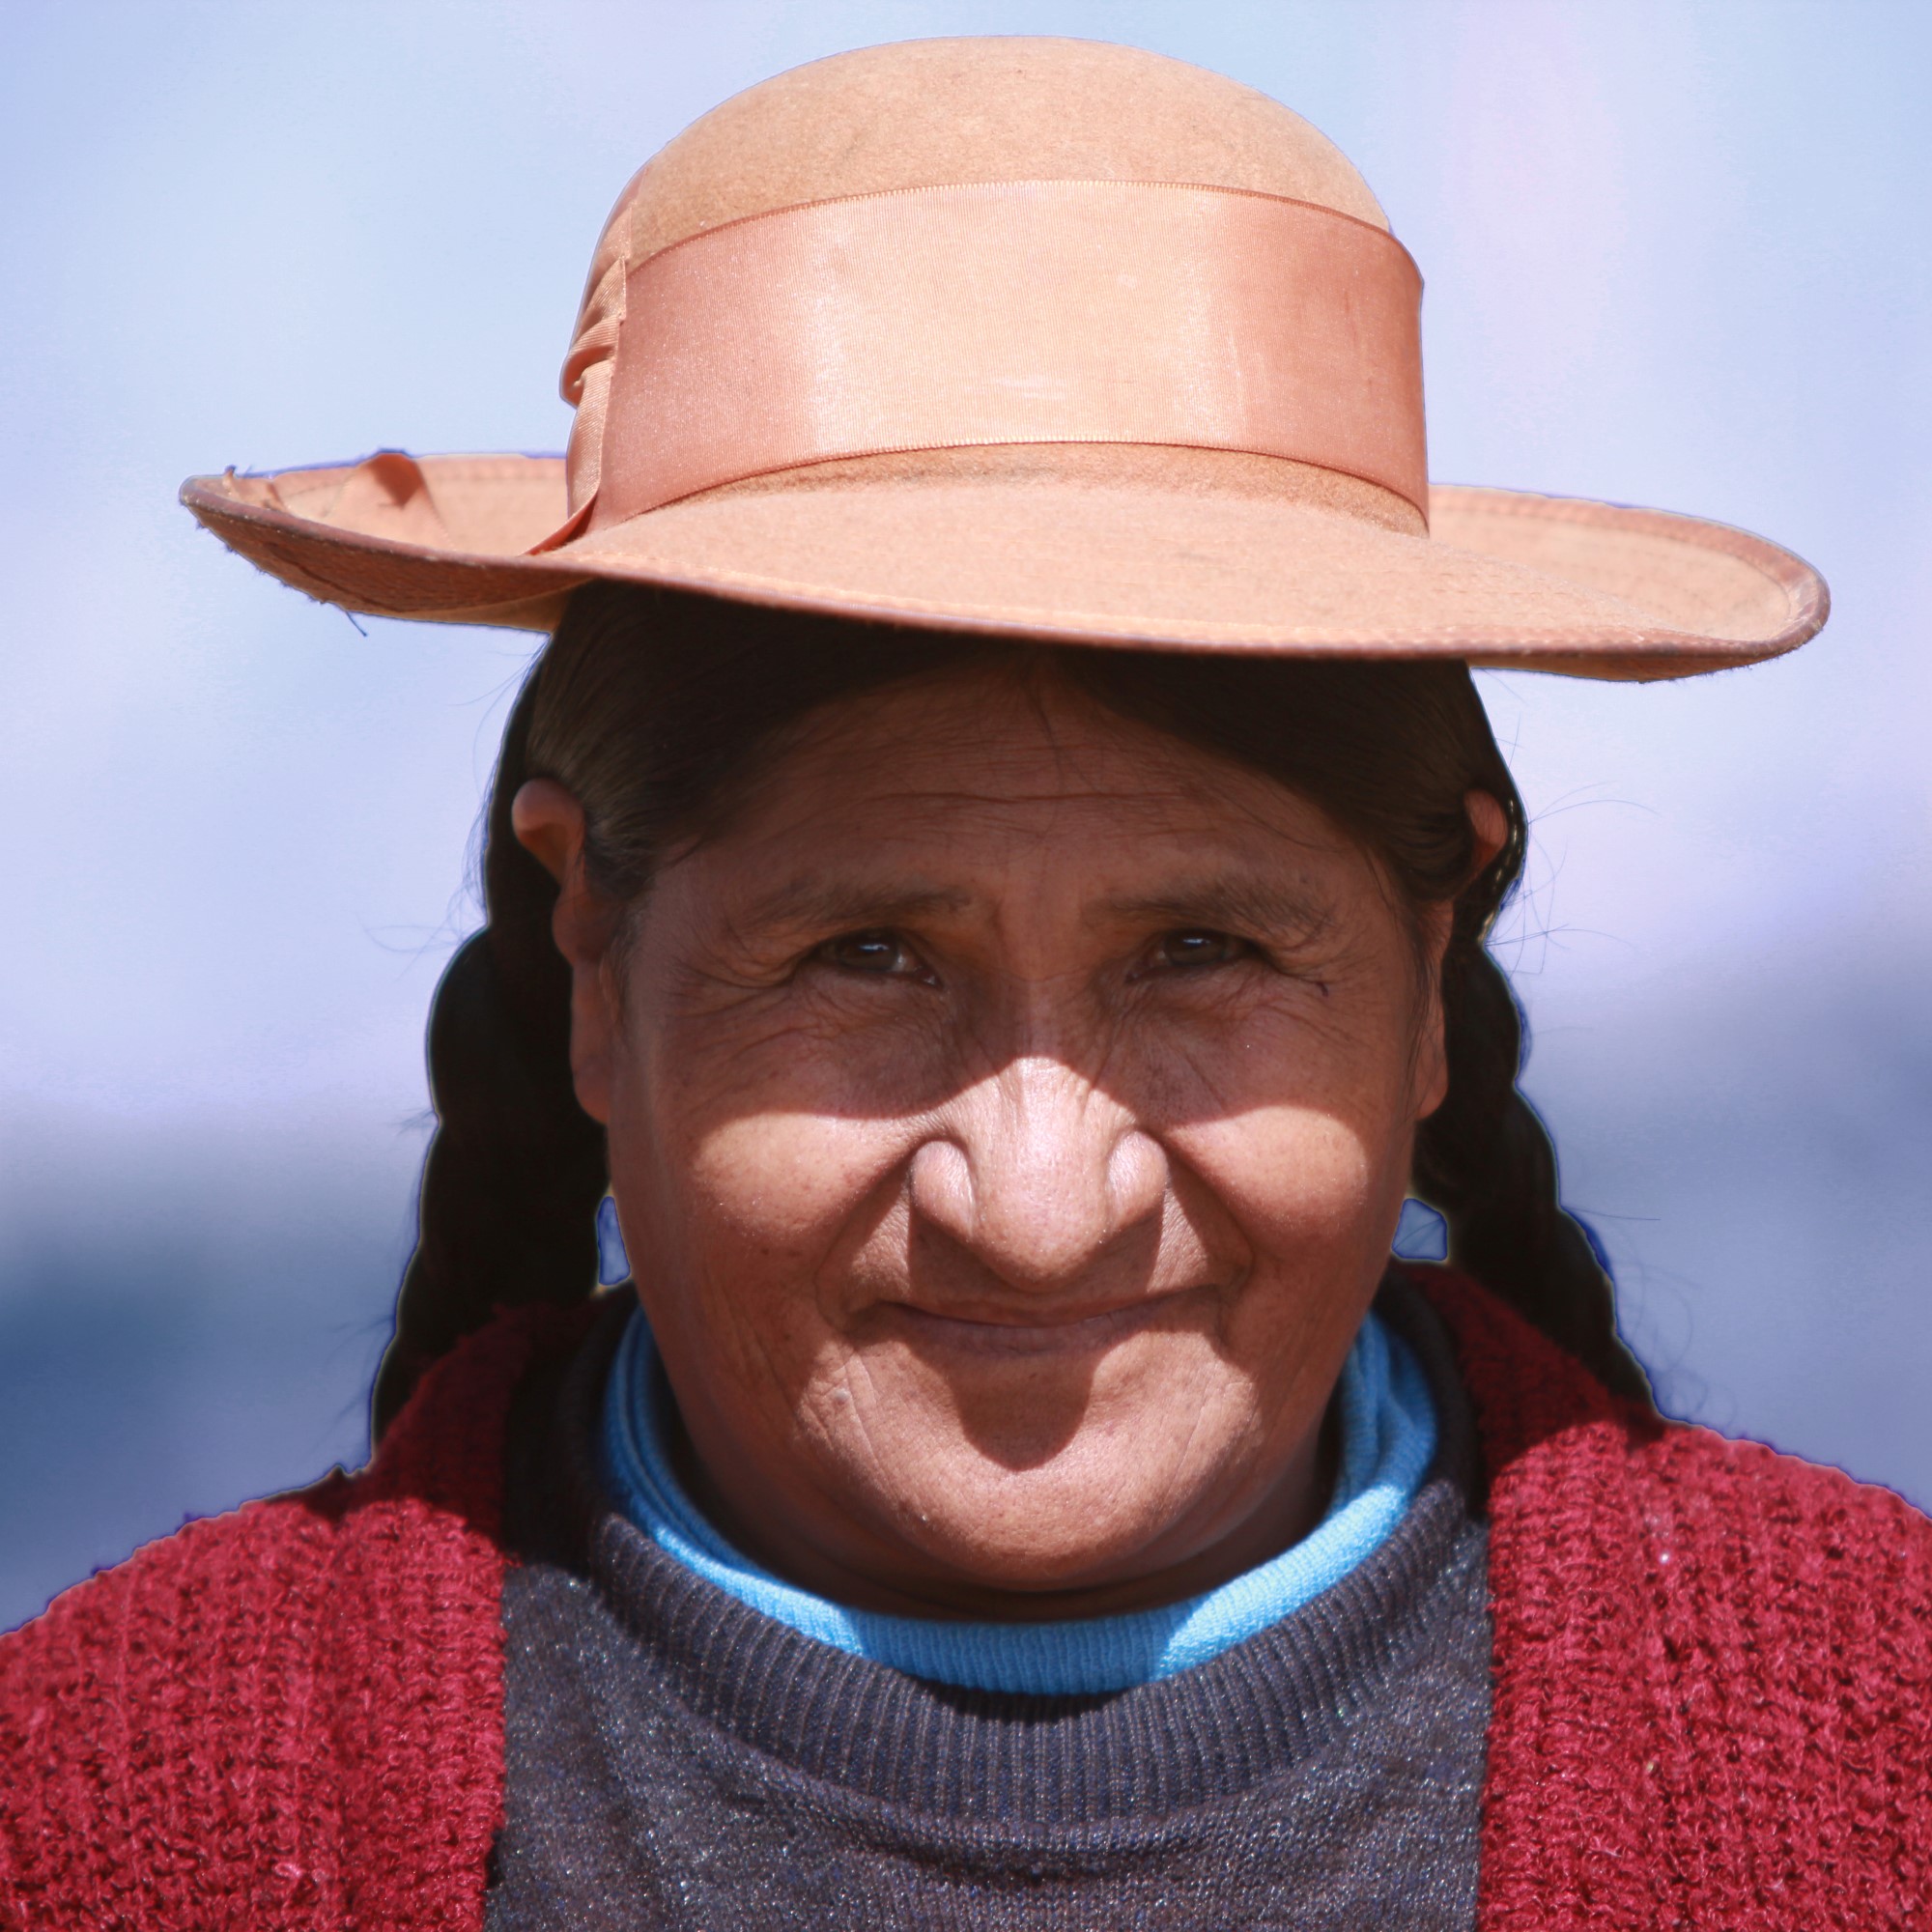 Peruansk kvinne i tradisjonelle klær